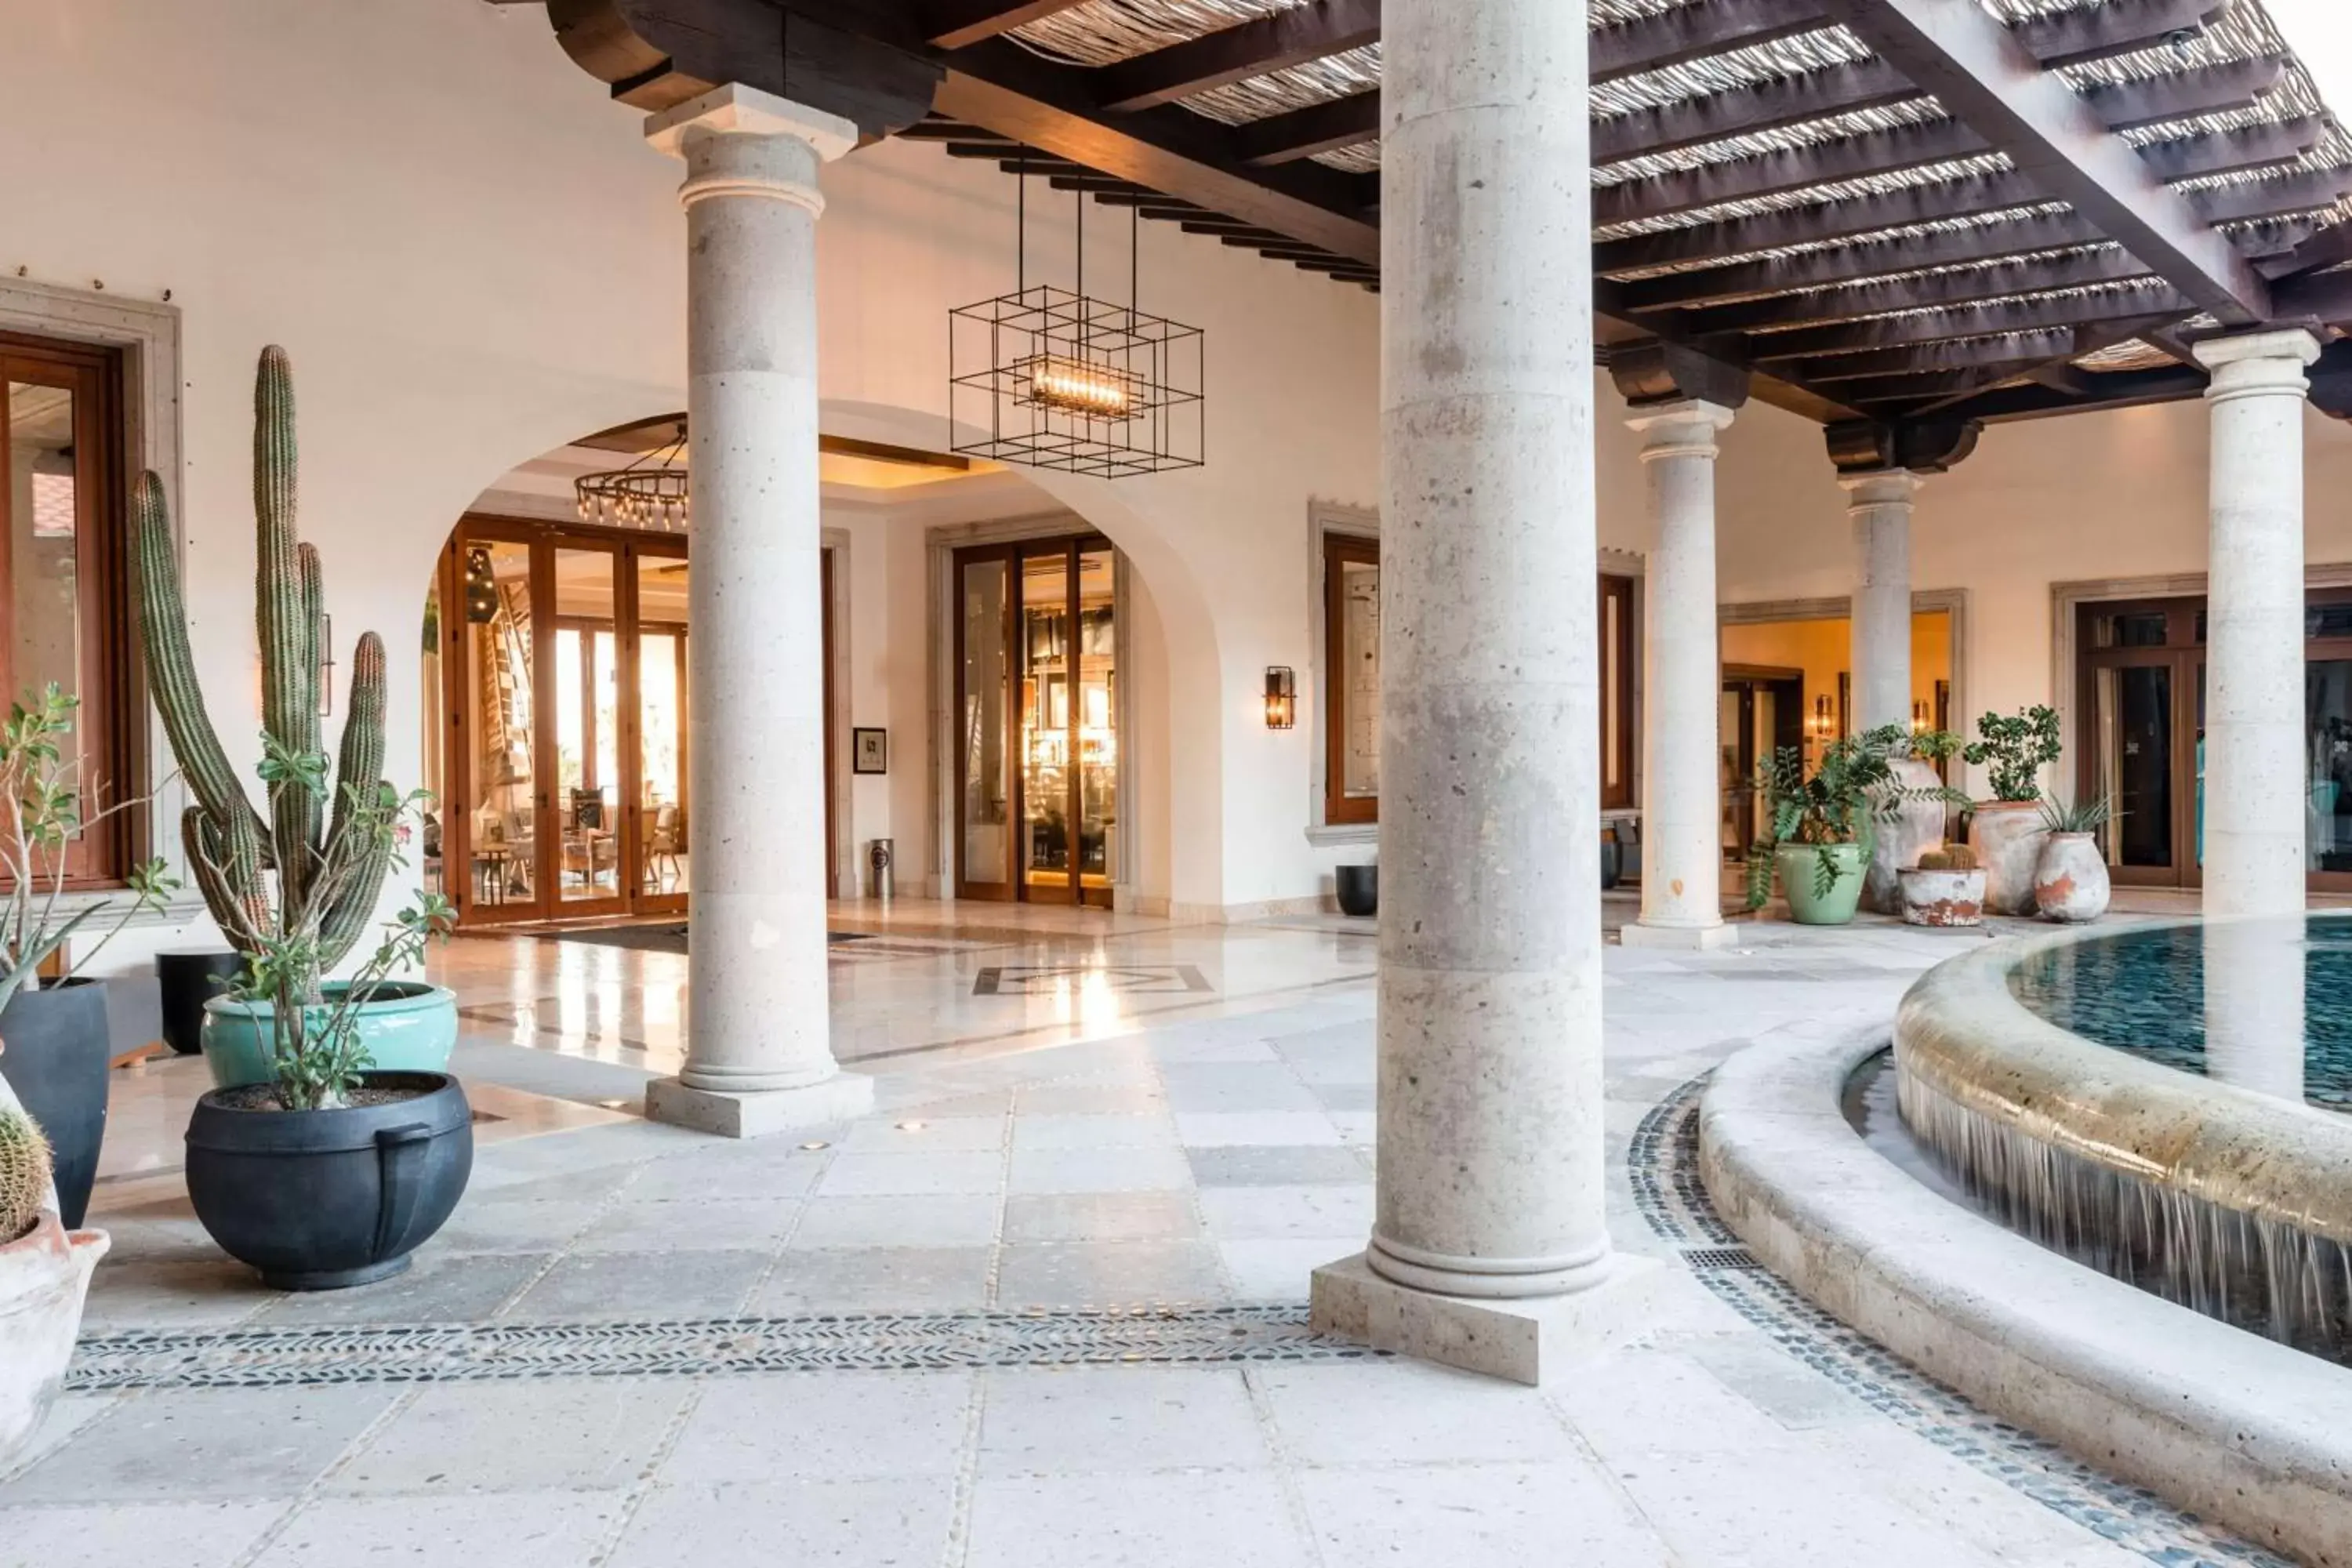 Lobby or reception in Hilton Grand Vacations Club La Pacifica Los Cabos